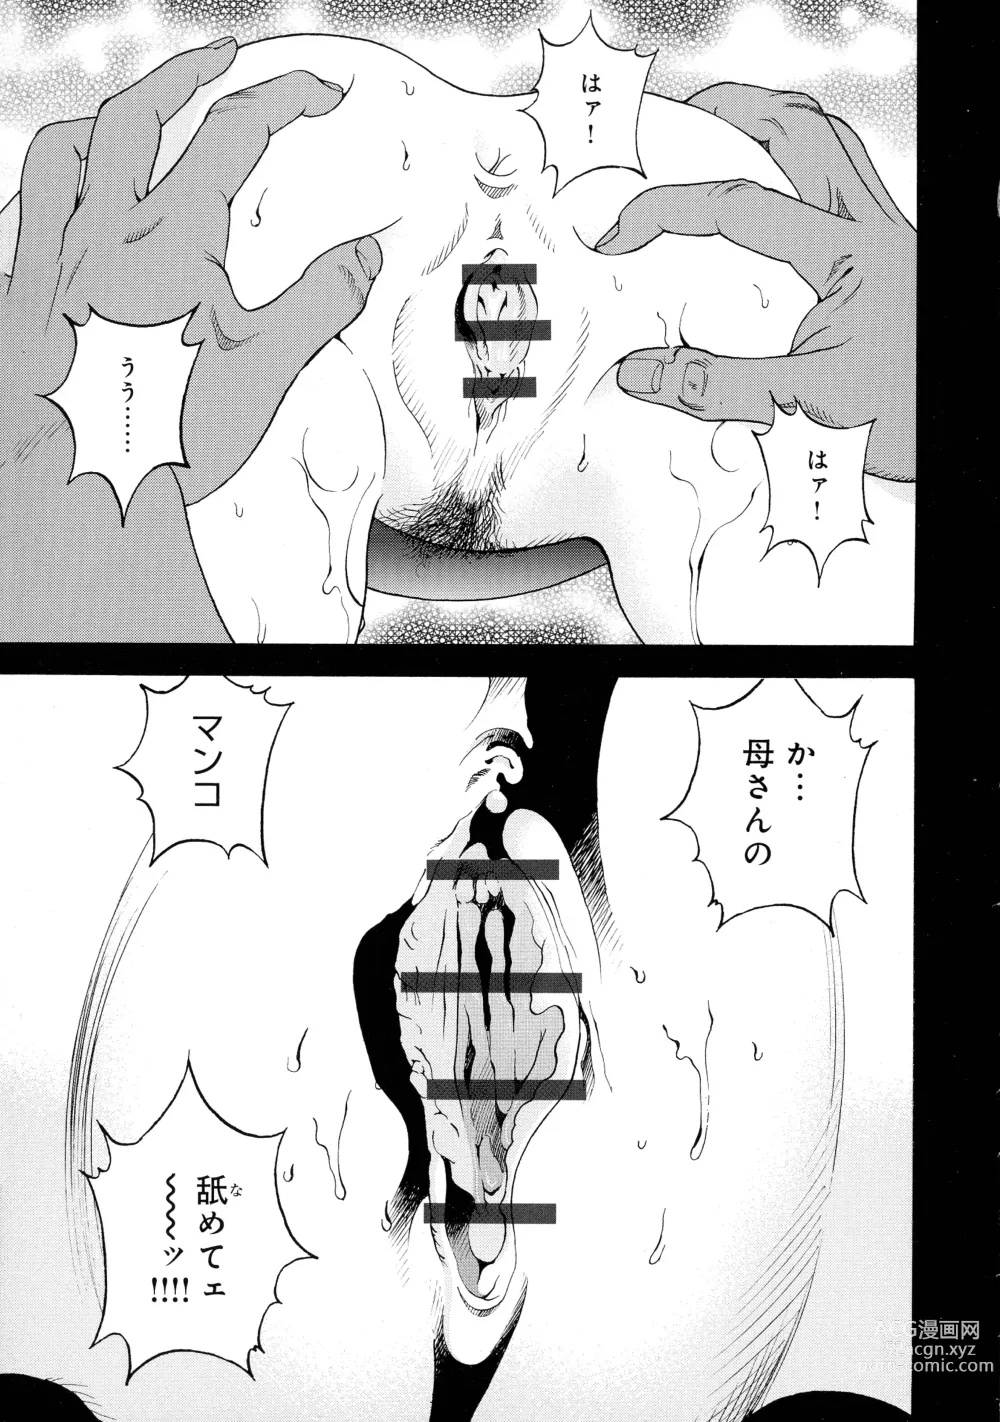 Page 9 of manga Bokinbako 2